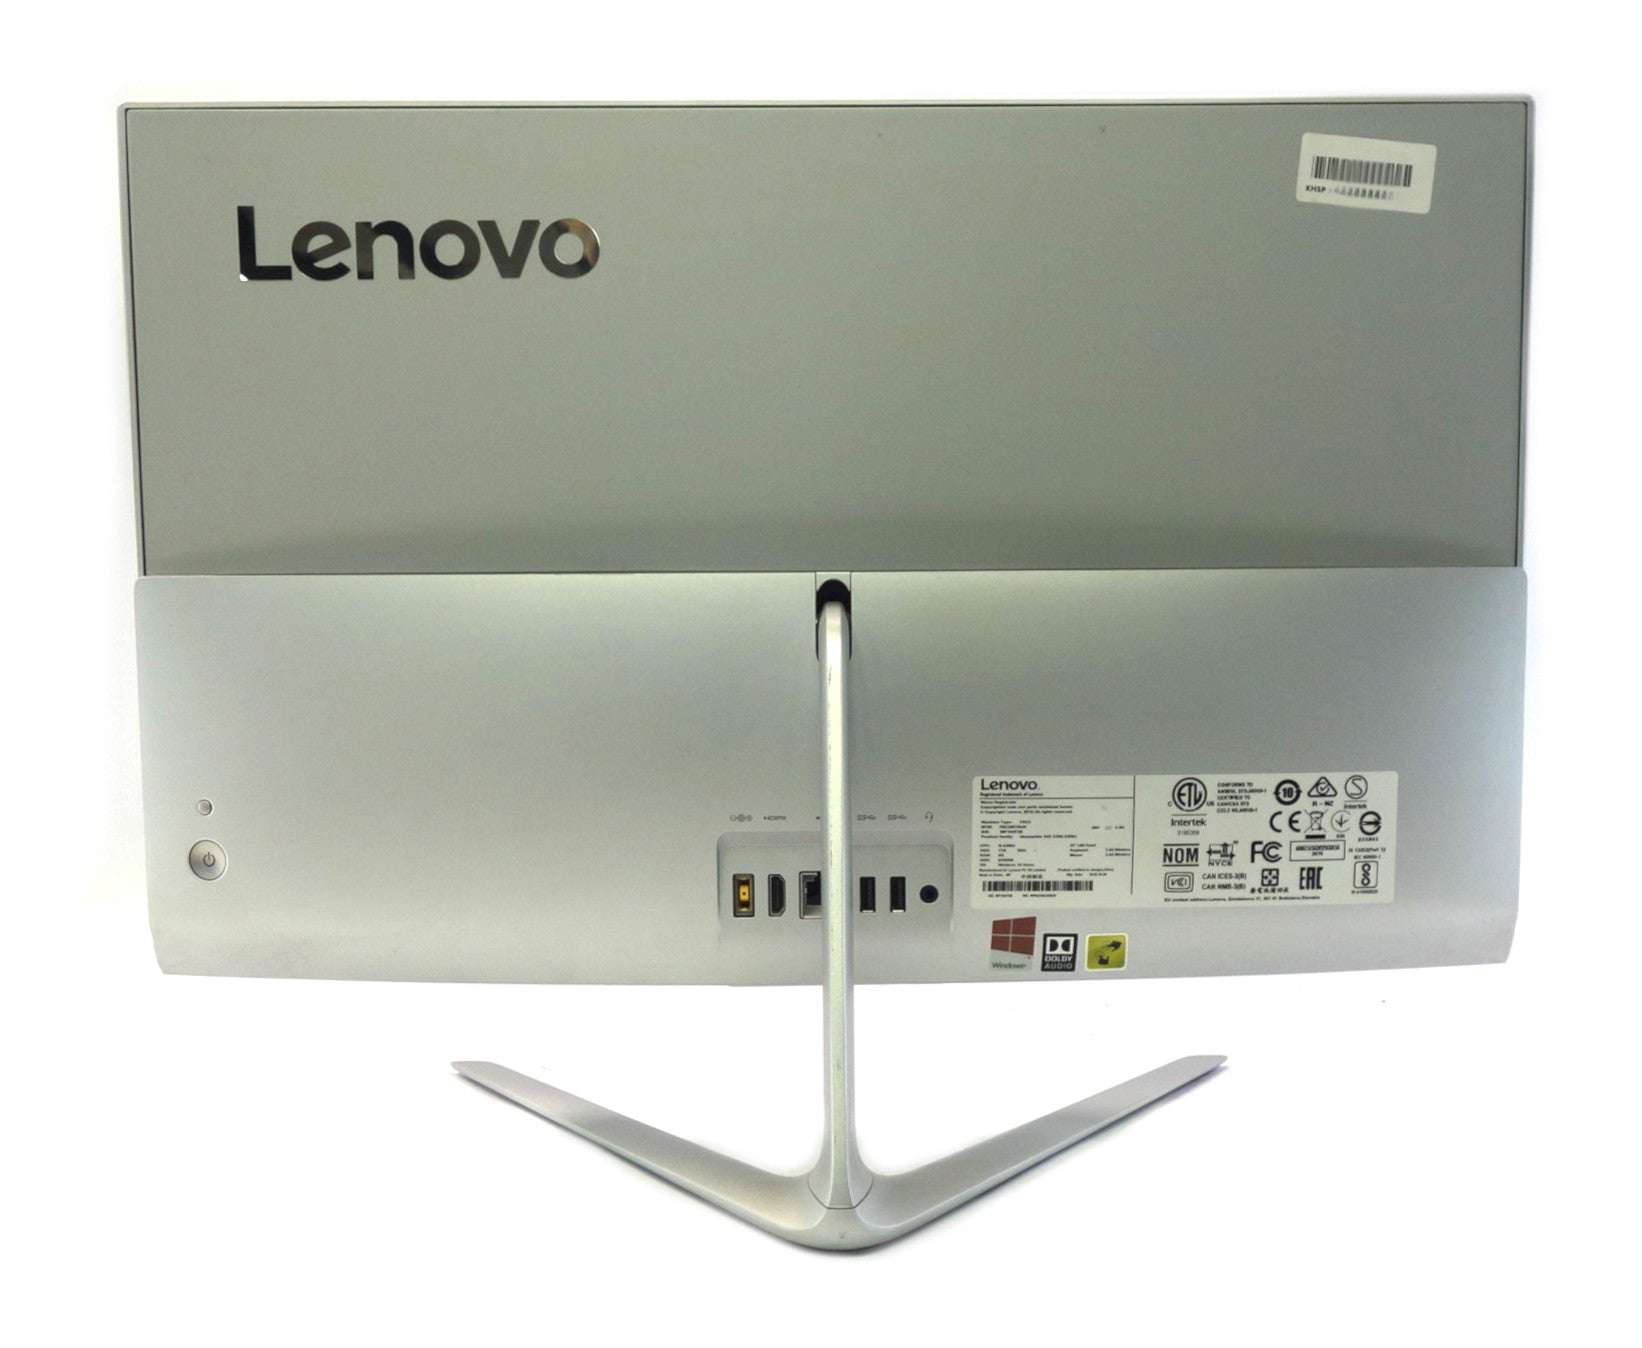 Lenovo Ideacentre 510s AiO PC, 23" Intel Core i5, 8GB RAM, 256GB SSD, Windows 10